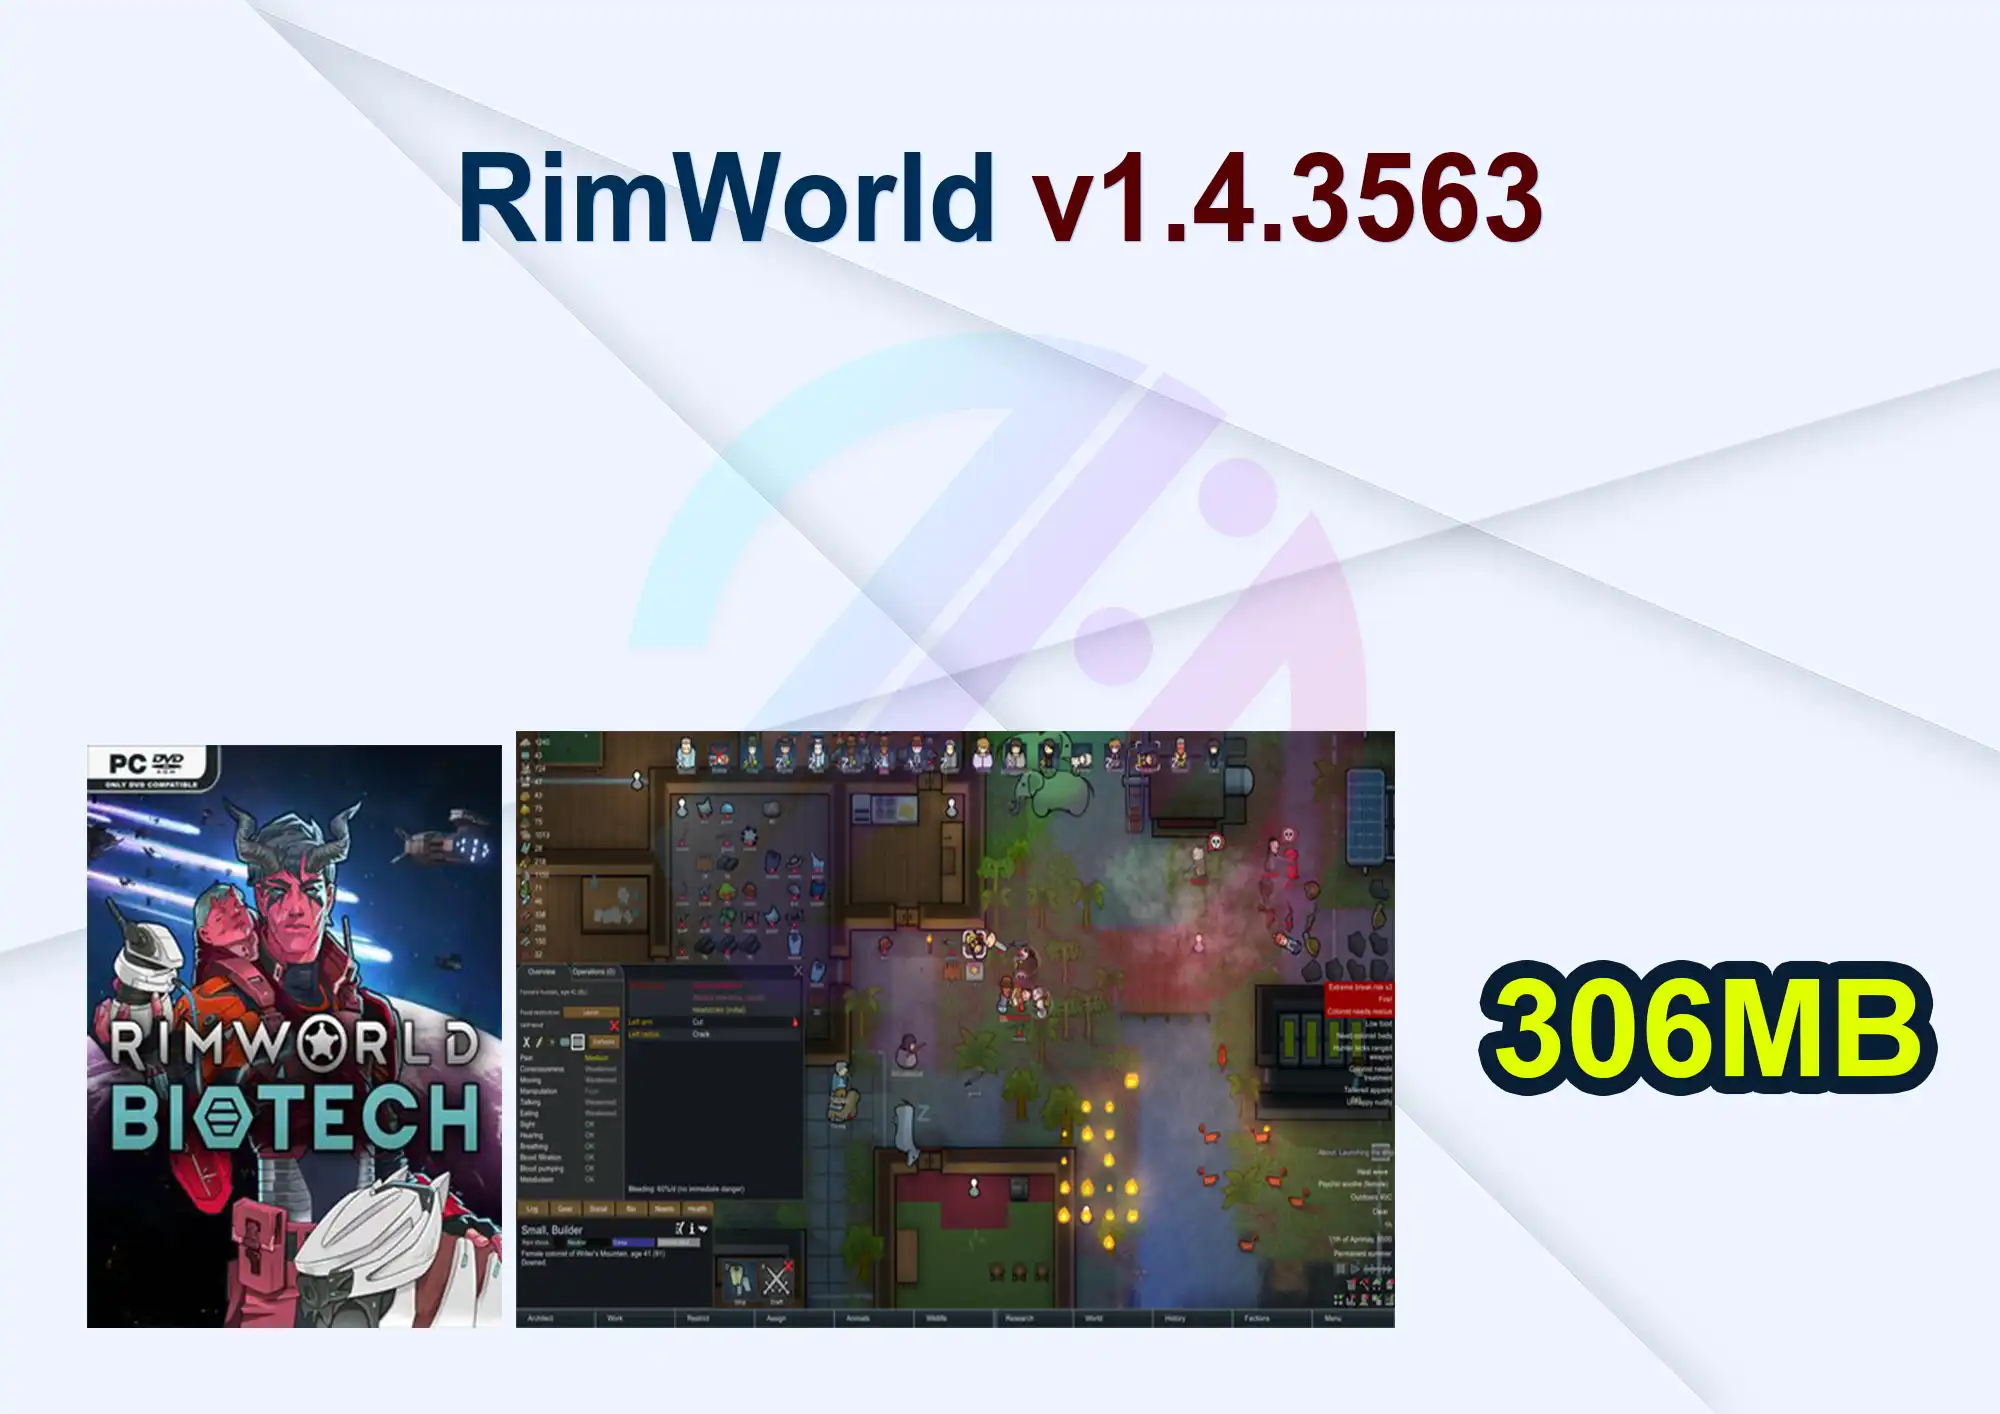 RimWorld v1.4.3563